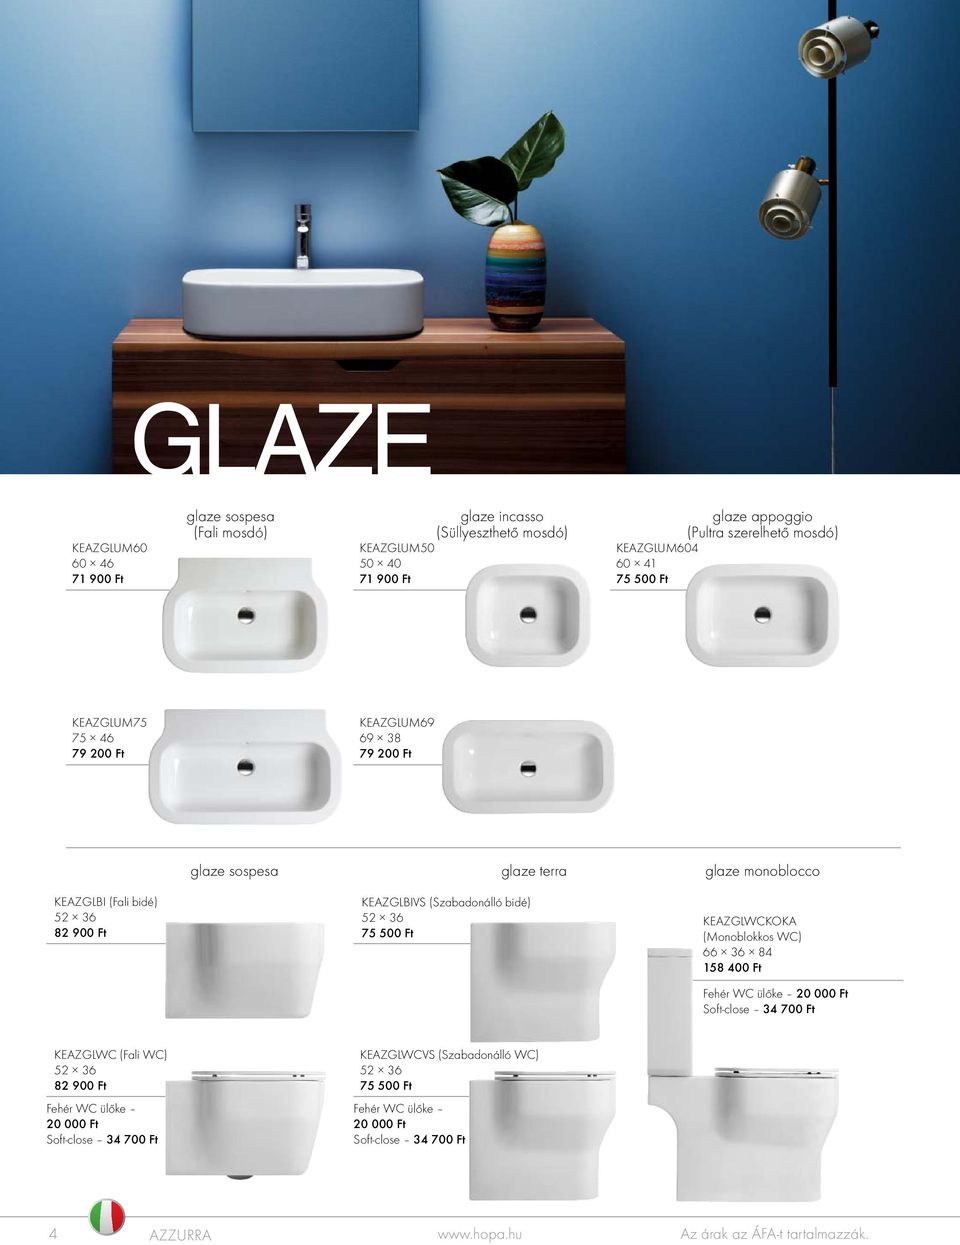 glaze terra glaze monoblocco KEAZGLBI (Fali bidé) 52 36 82 900 Ft KEAZGLBIVS (Szabadonálló bidé) 52 36 75 500 Ft